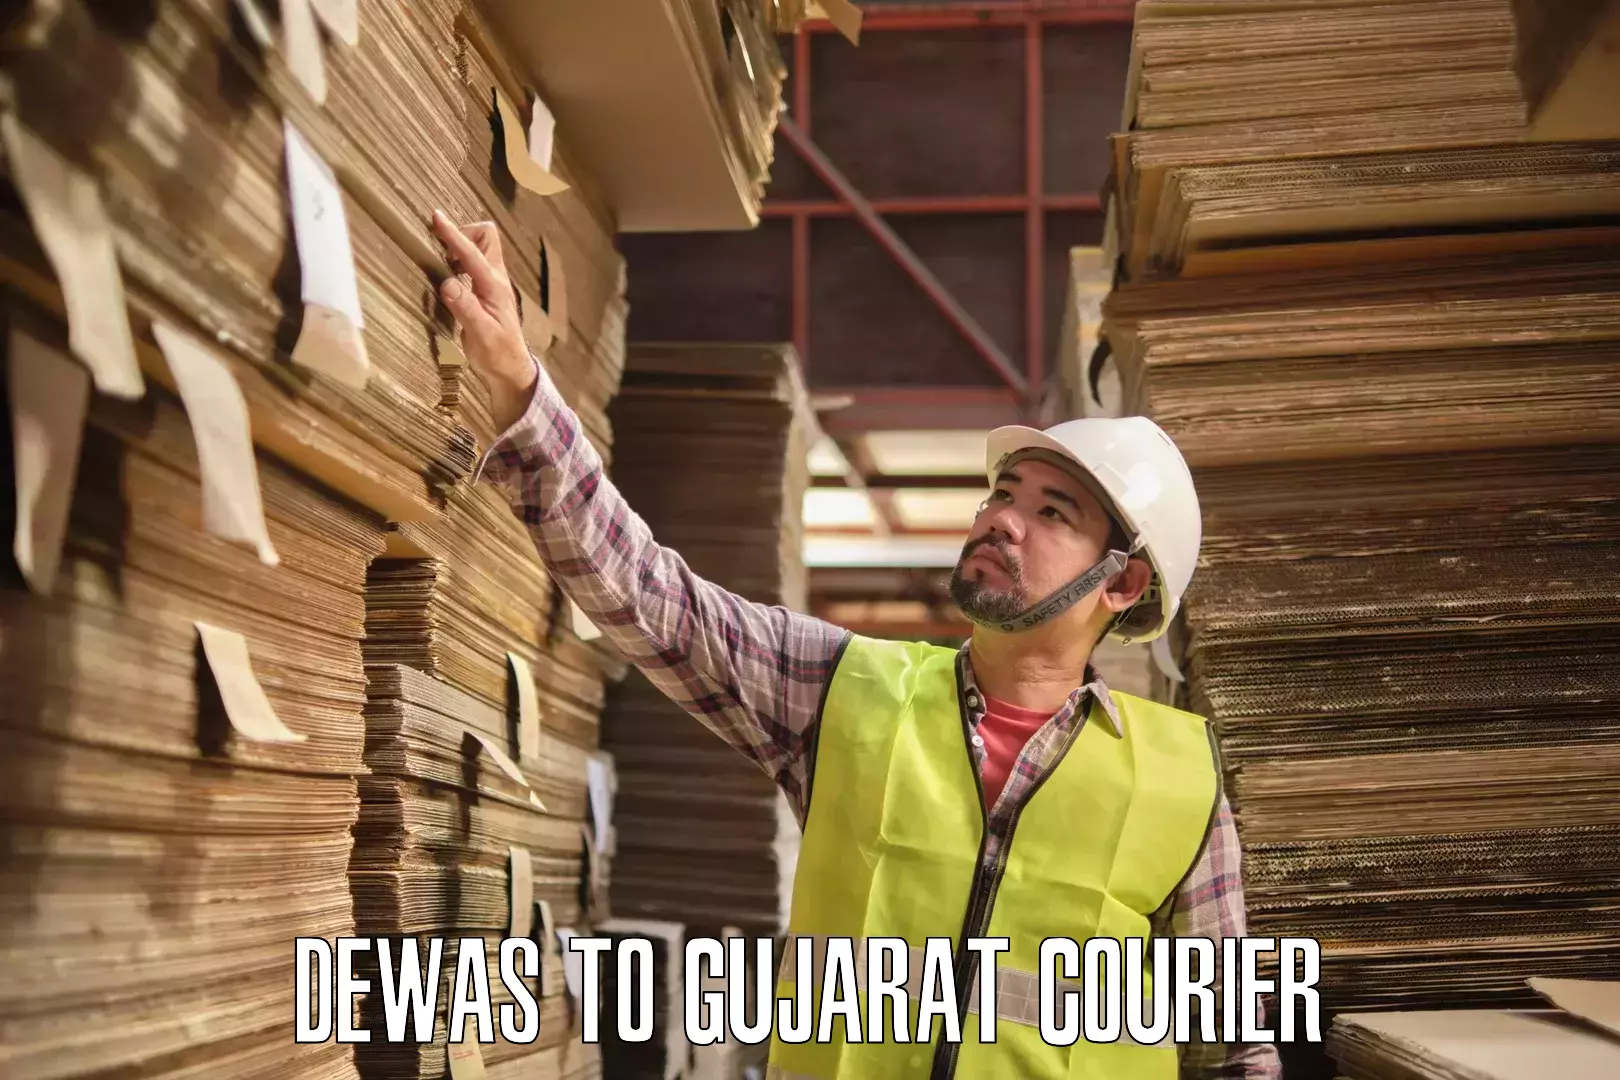 Courier service efficiency Dewas to Gujarat